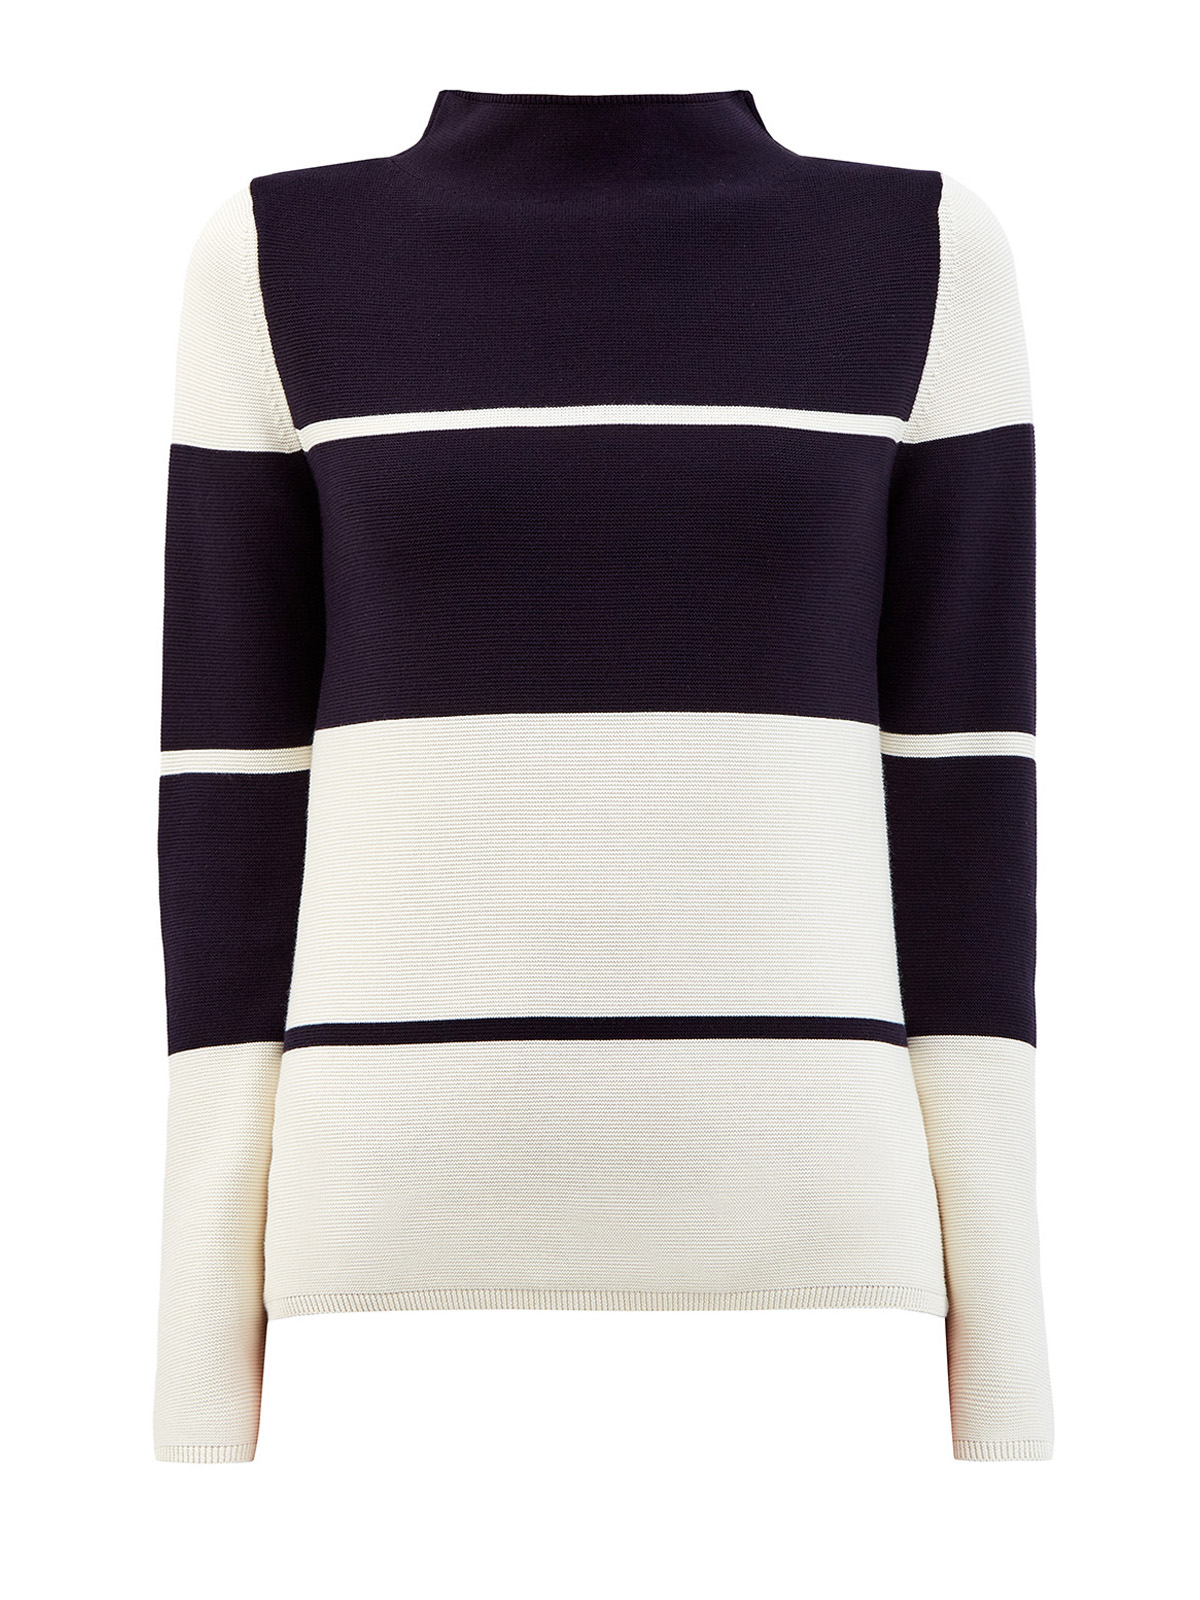 Пуловер из хлопковой пряжи в стиле colorblock LORENA ANTONIAZZI, цвет черно-белый, размер 40 - фото 1